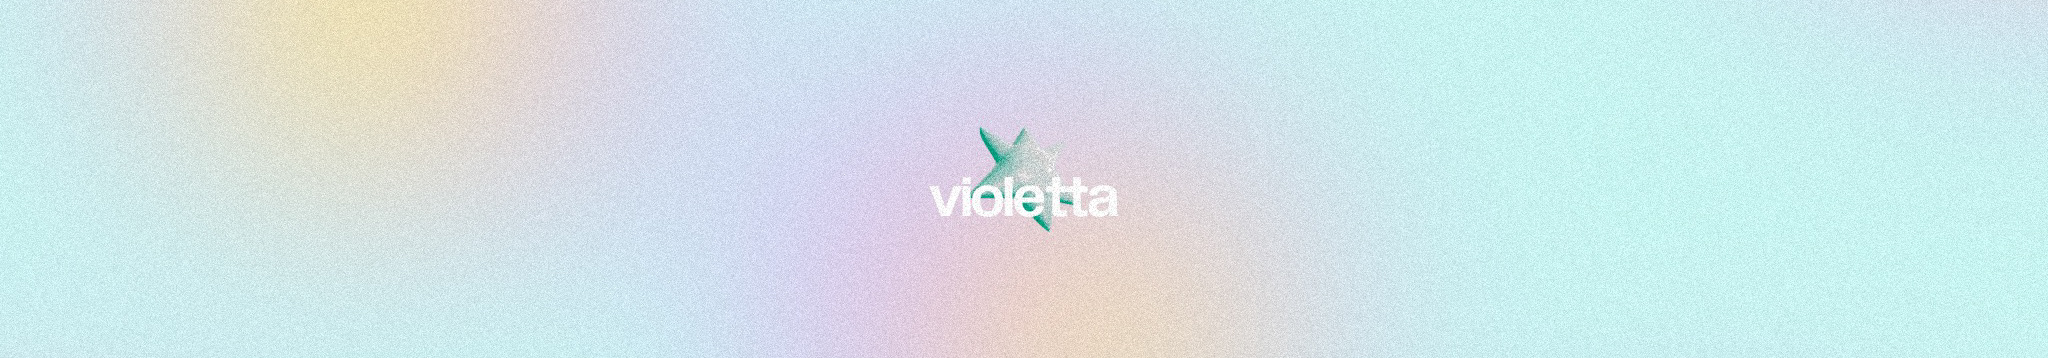 виолетта леонова's profile banner